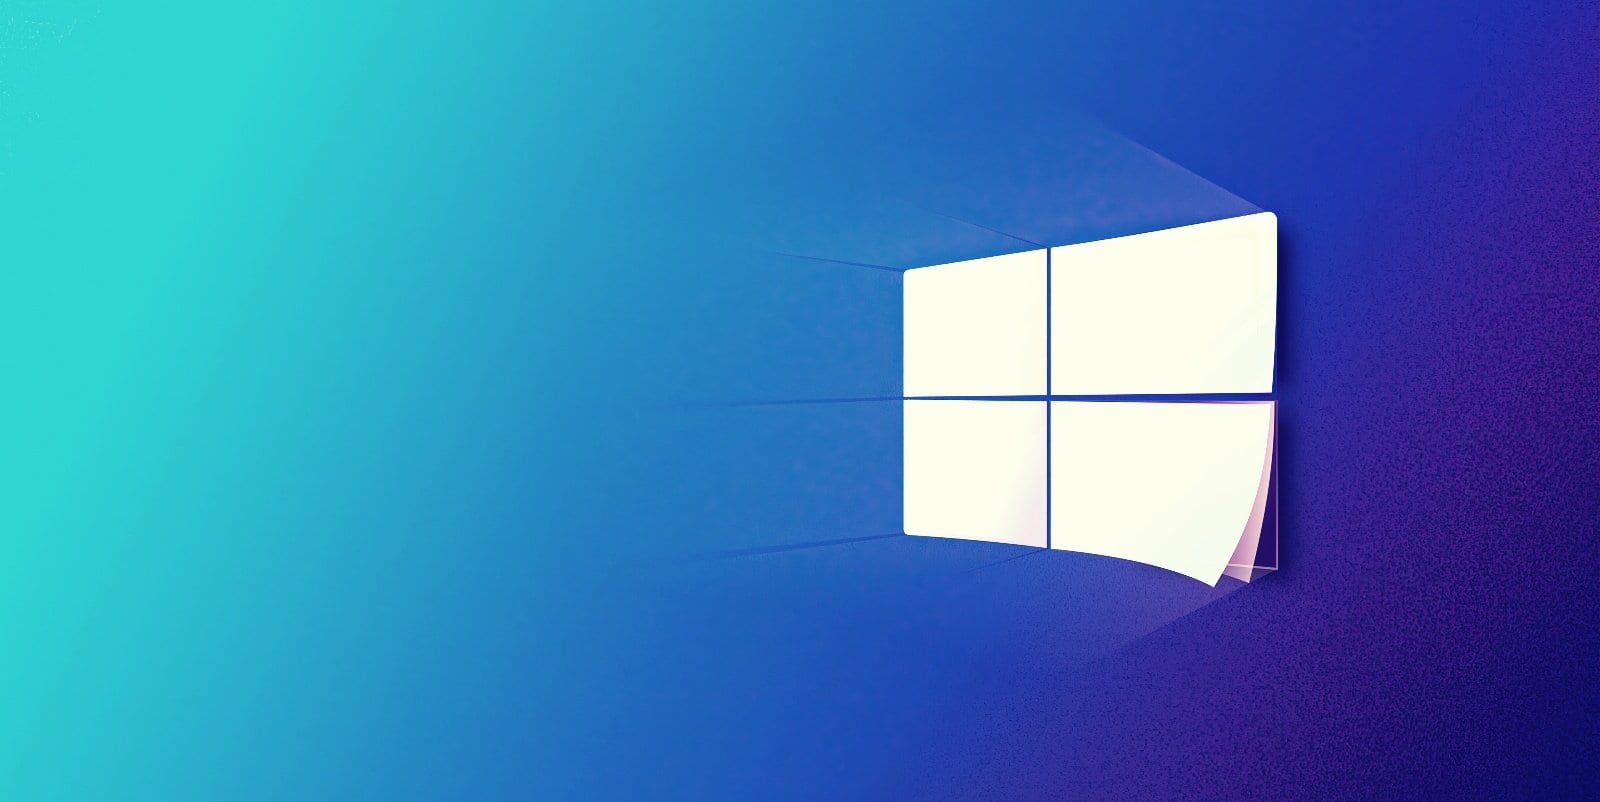 Windows 10 Sun Valley obtendrá más animaciones